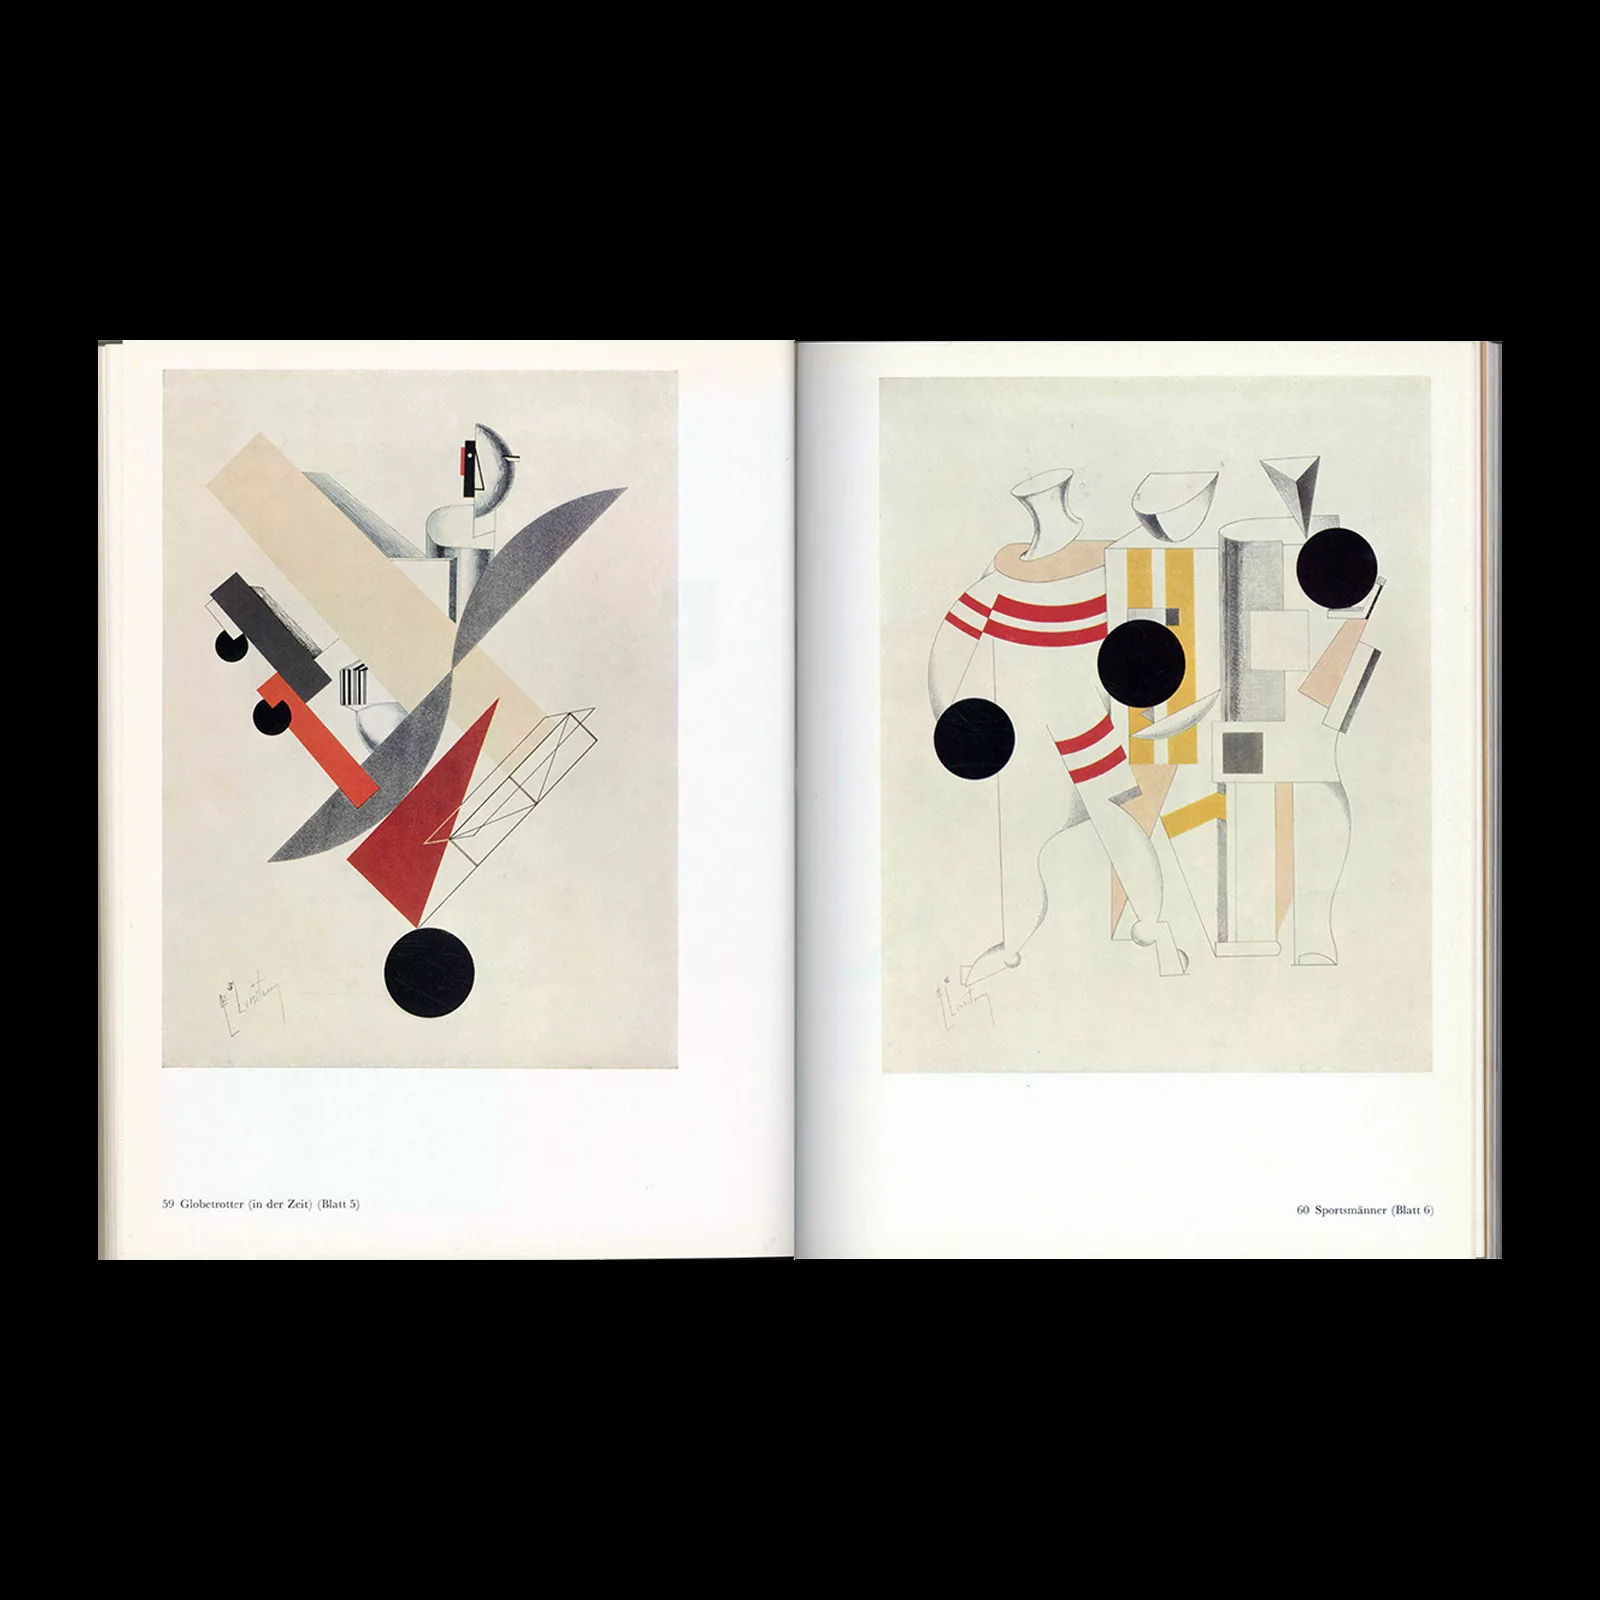 El Lissitzky - Maler Architect Typograf Fotograf, Veb Verlag Der Kunst, 1976